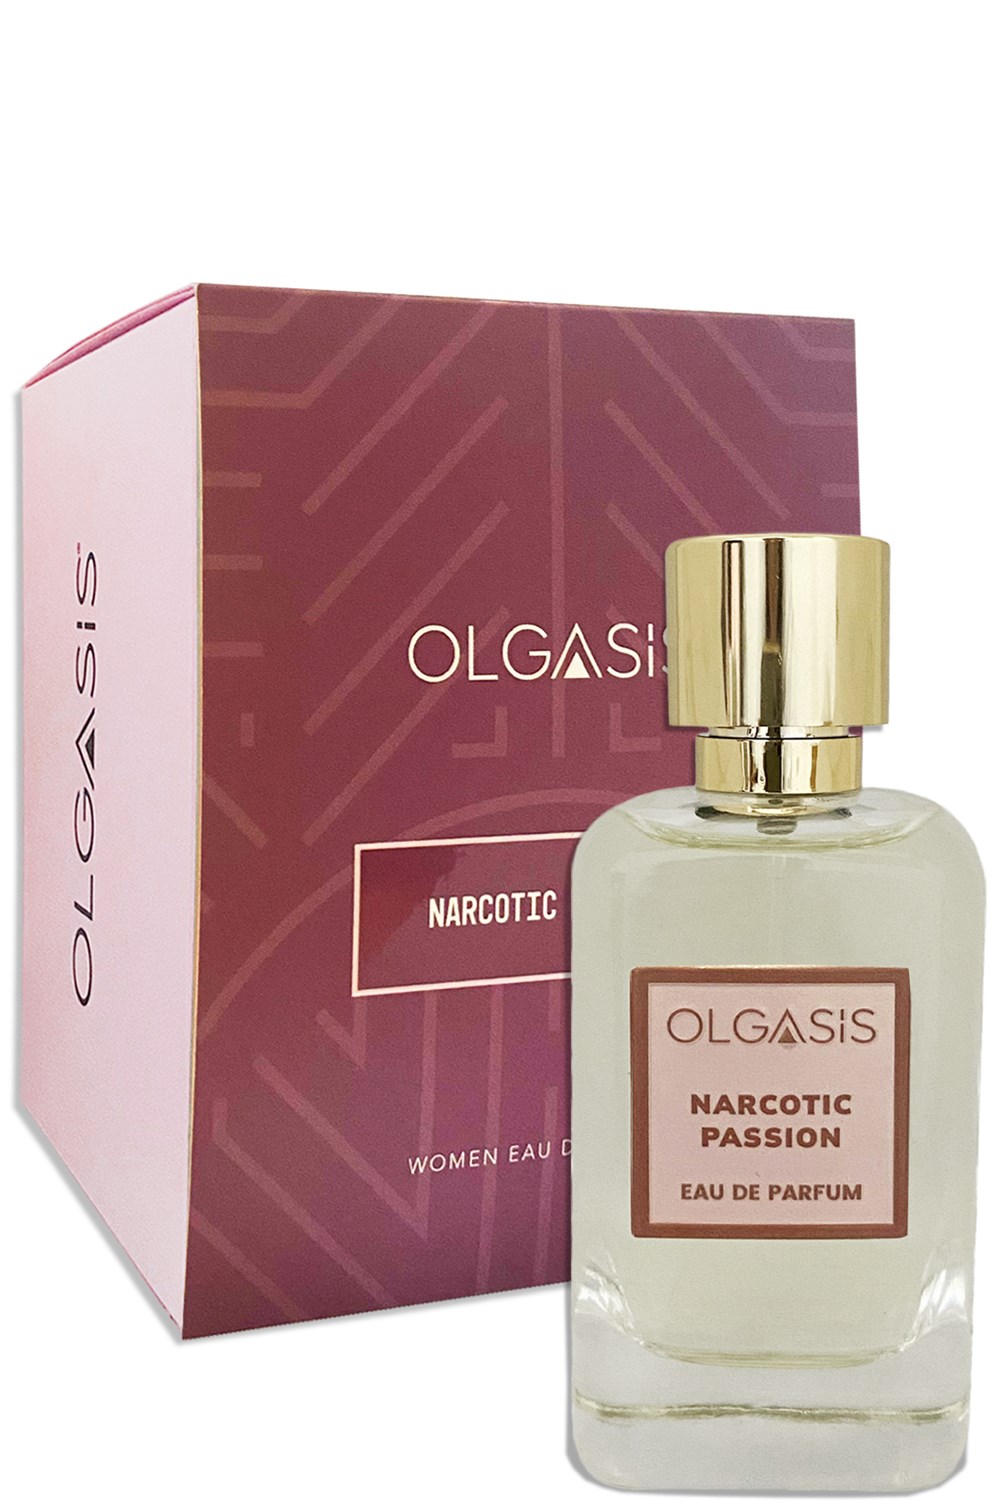 Olgasis Narcotıc Passıon Edp 100 Ml Woman Eau De Parfum Nish Parfüm Kalıcı  Kadın Parfümü 4-